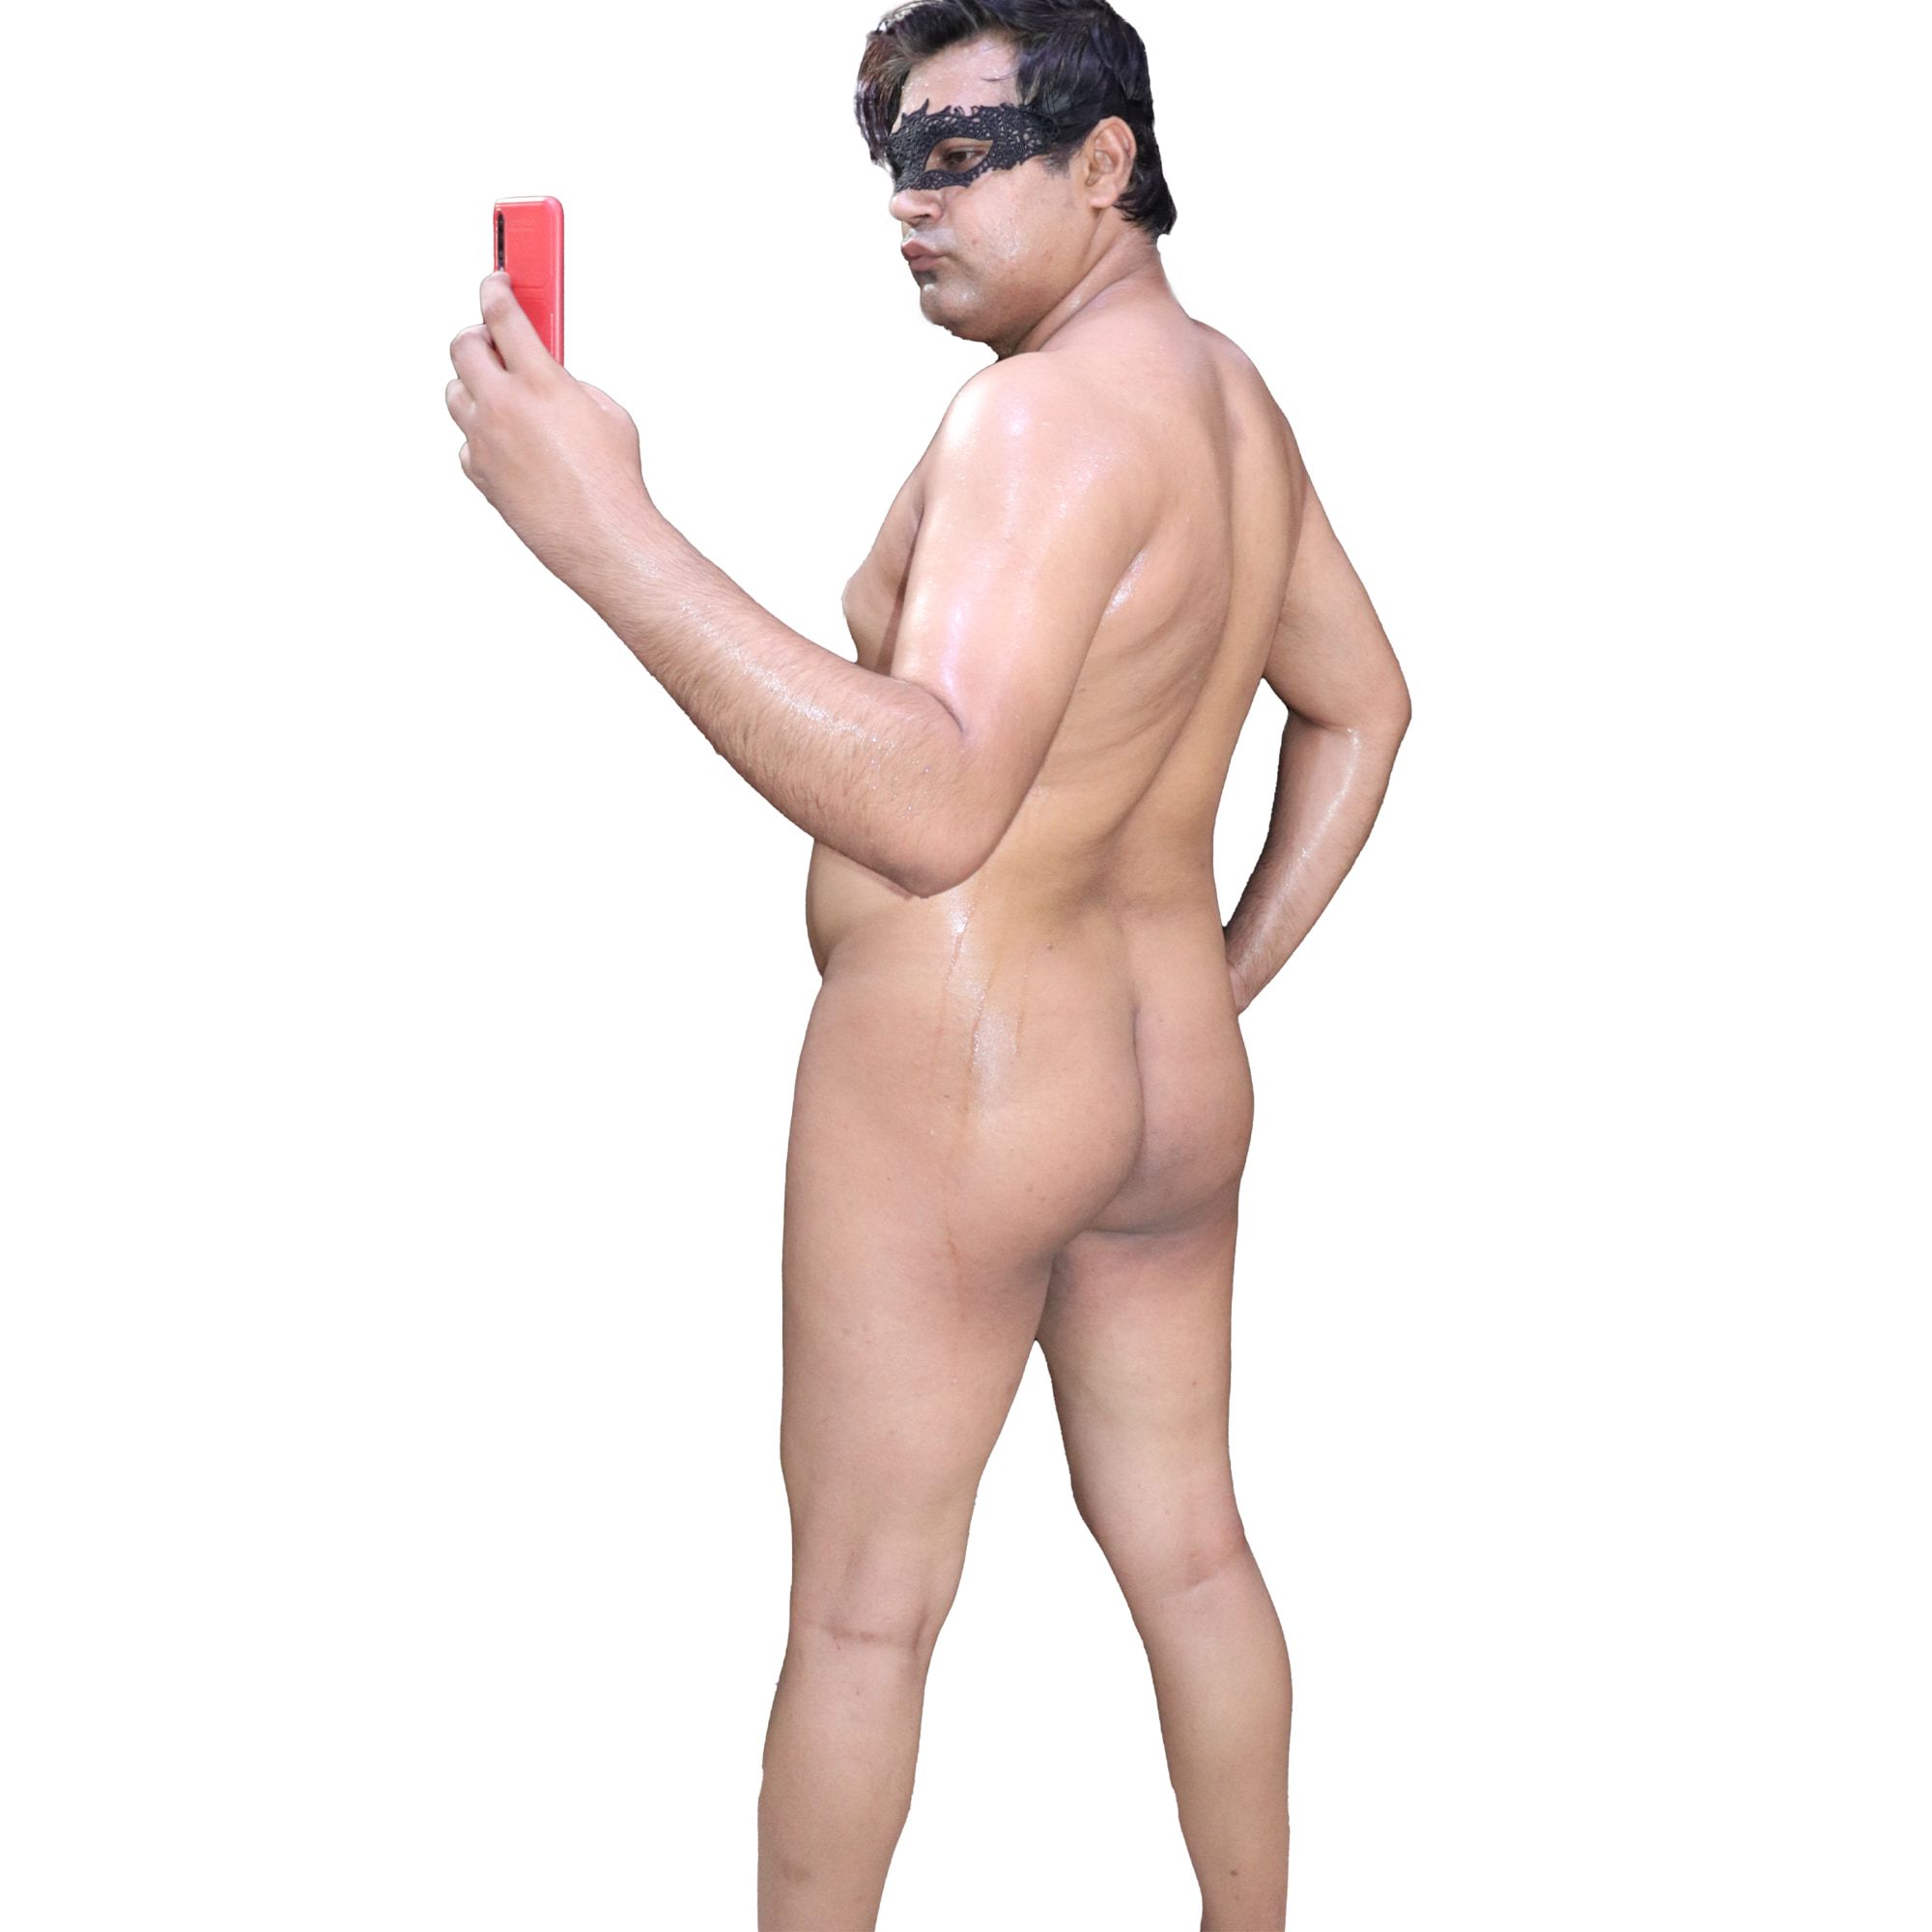 Desi Boy Waqas Showing Big Ass Nude in Public